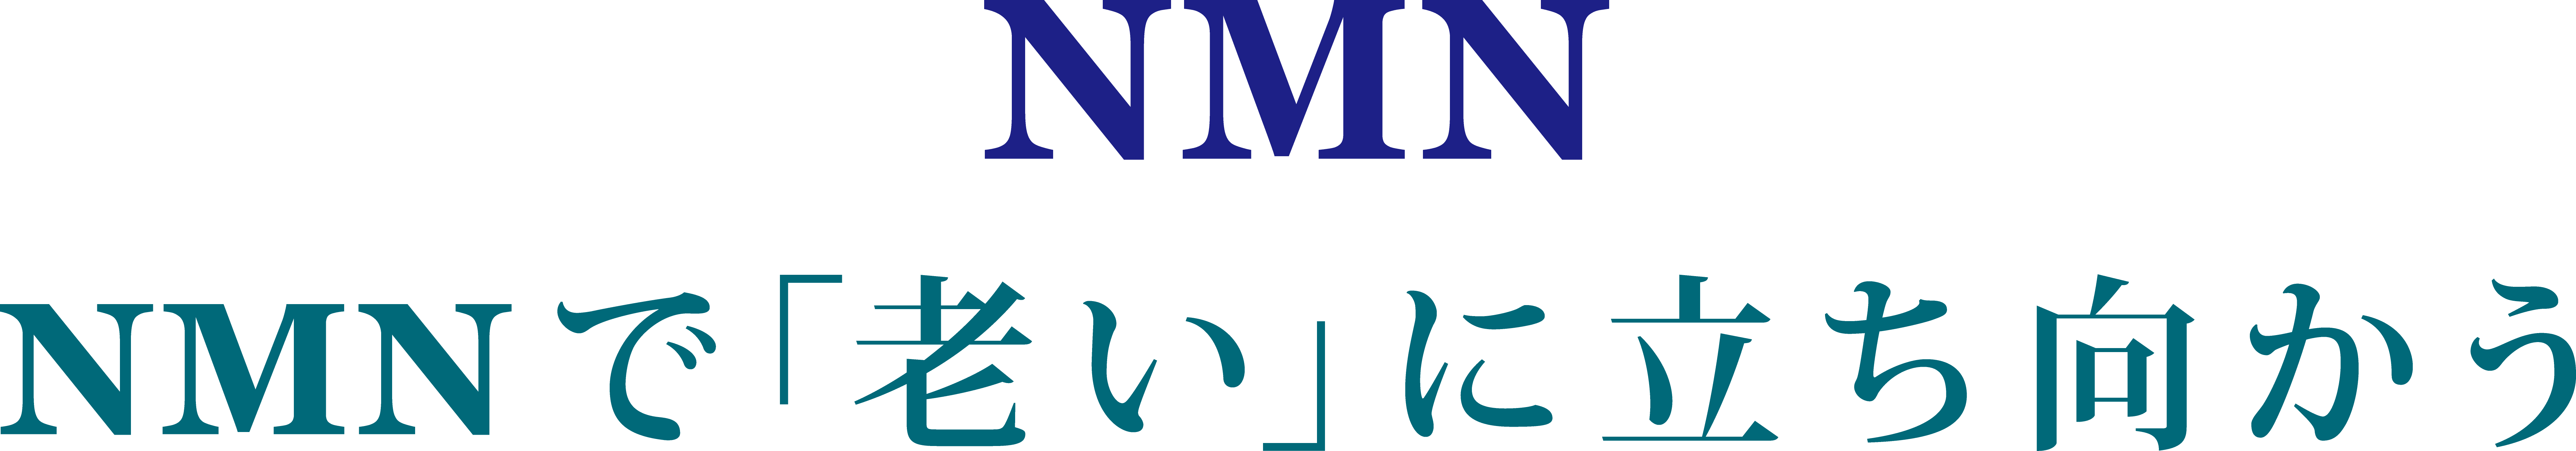 N_3N_NMN